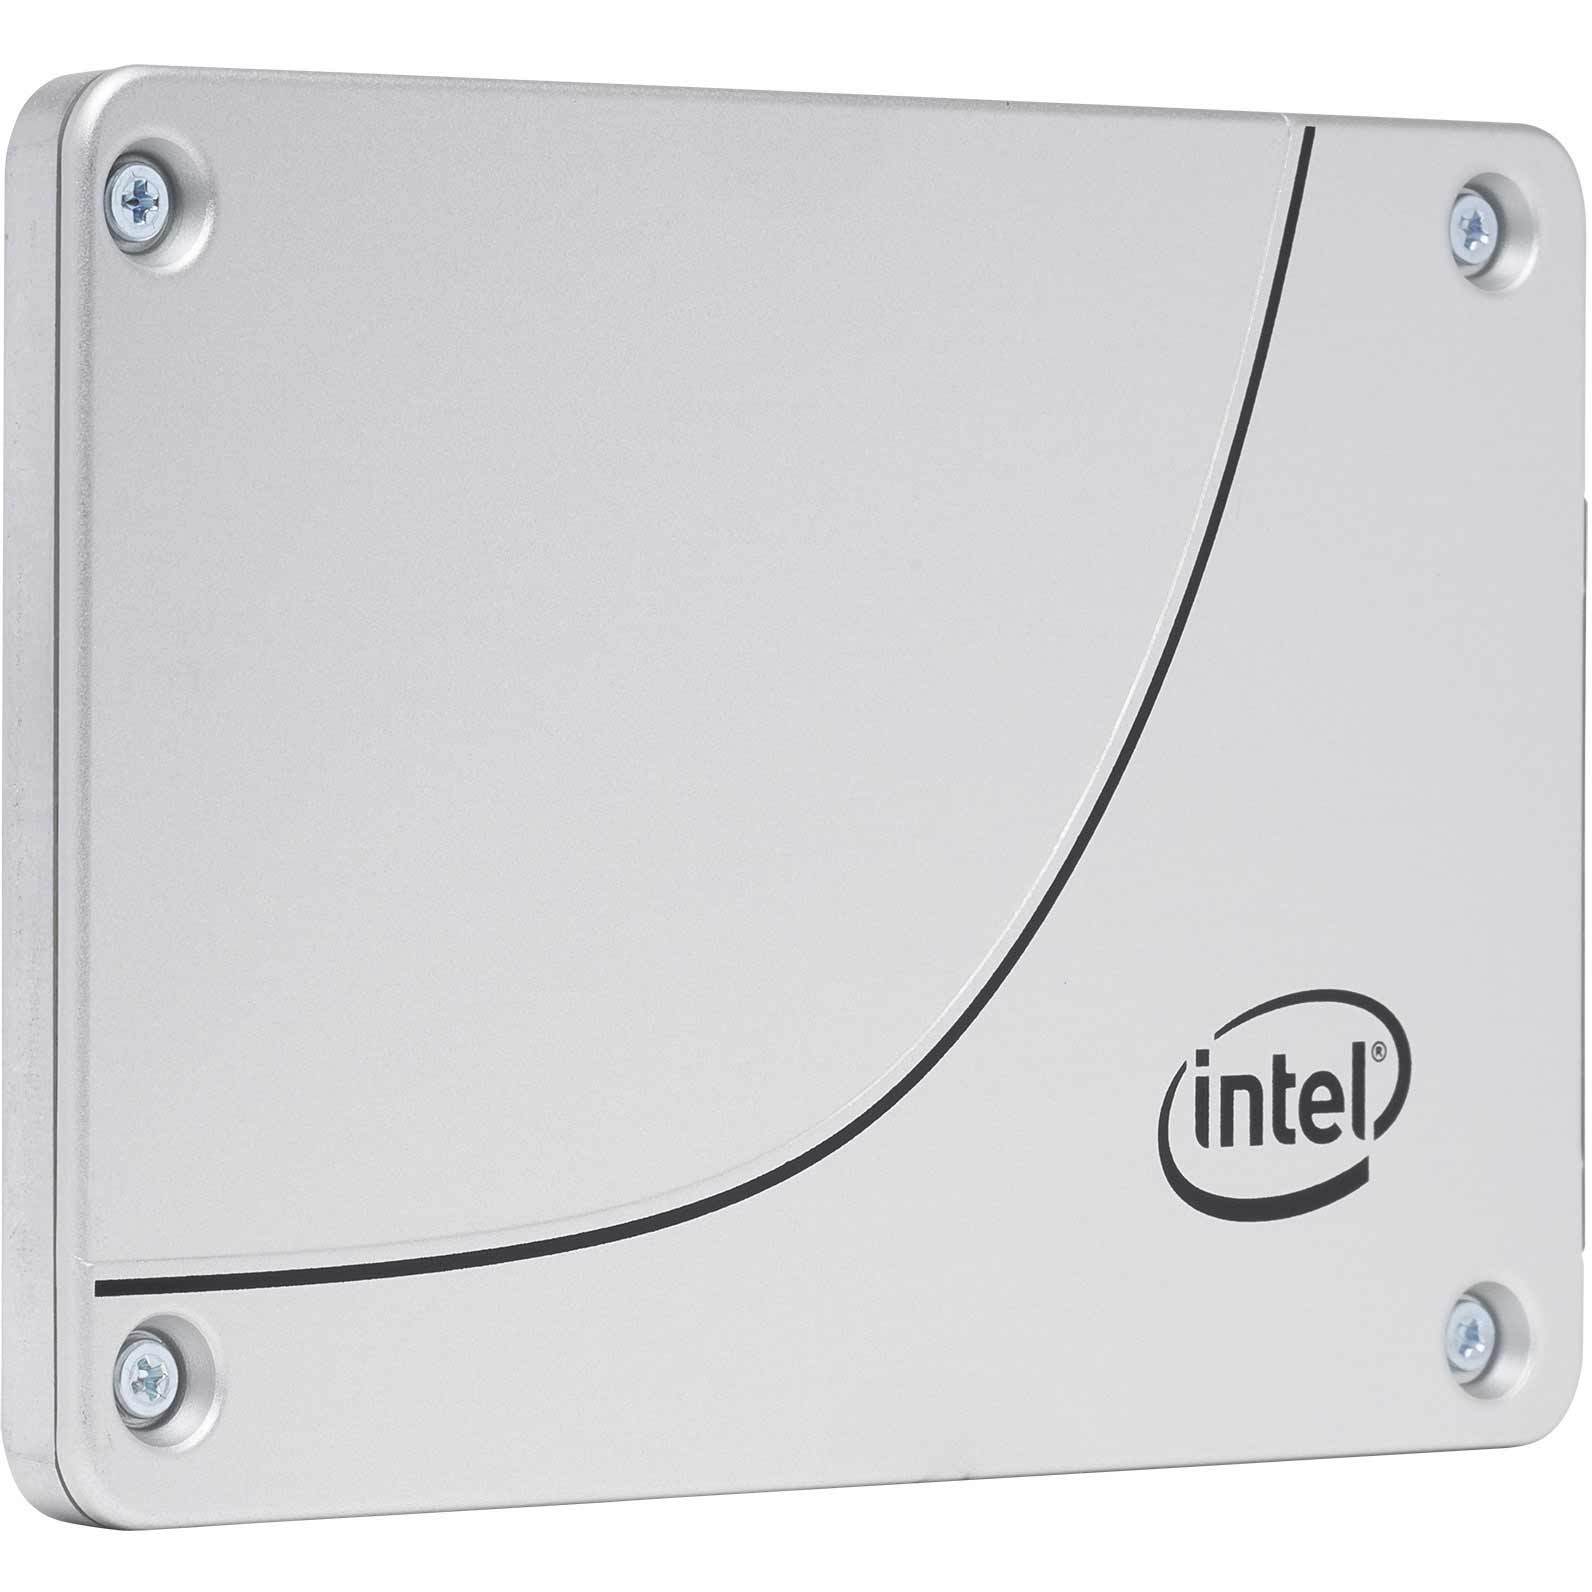 Intel DC S4500 SSDSC2KB038T701 3.84TB SATA 6Gb/s 2.5" SSD